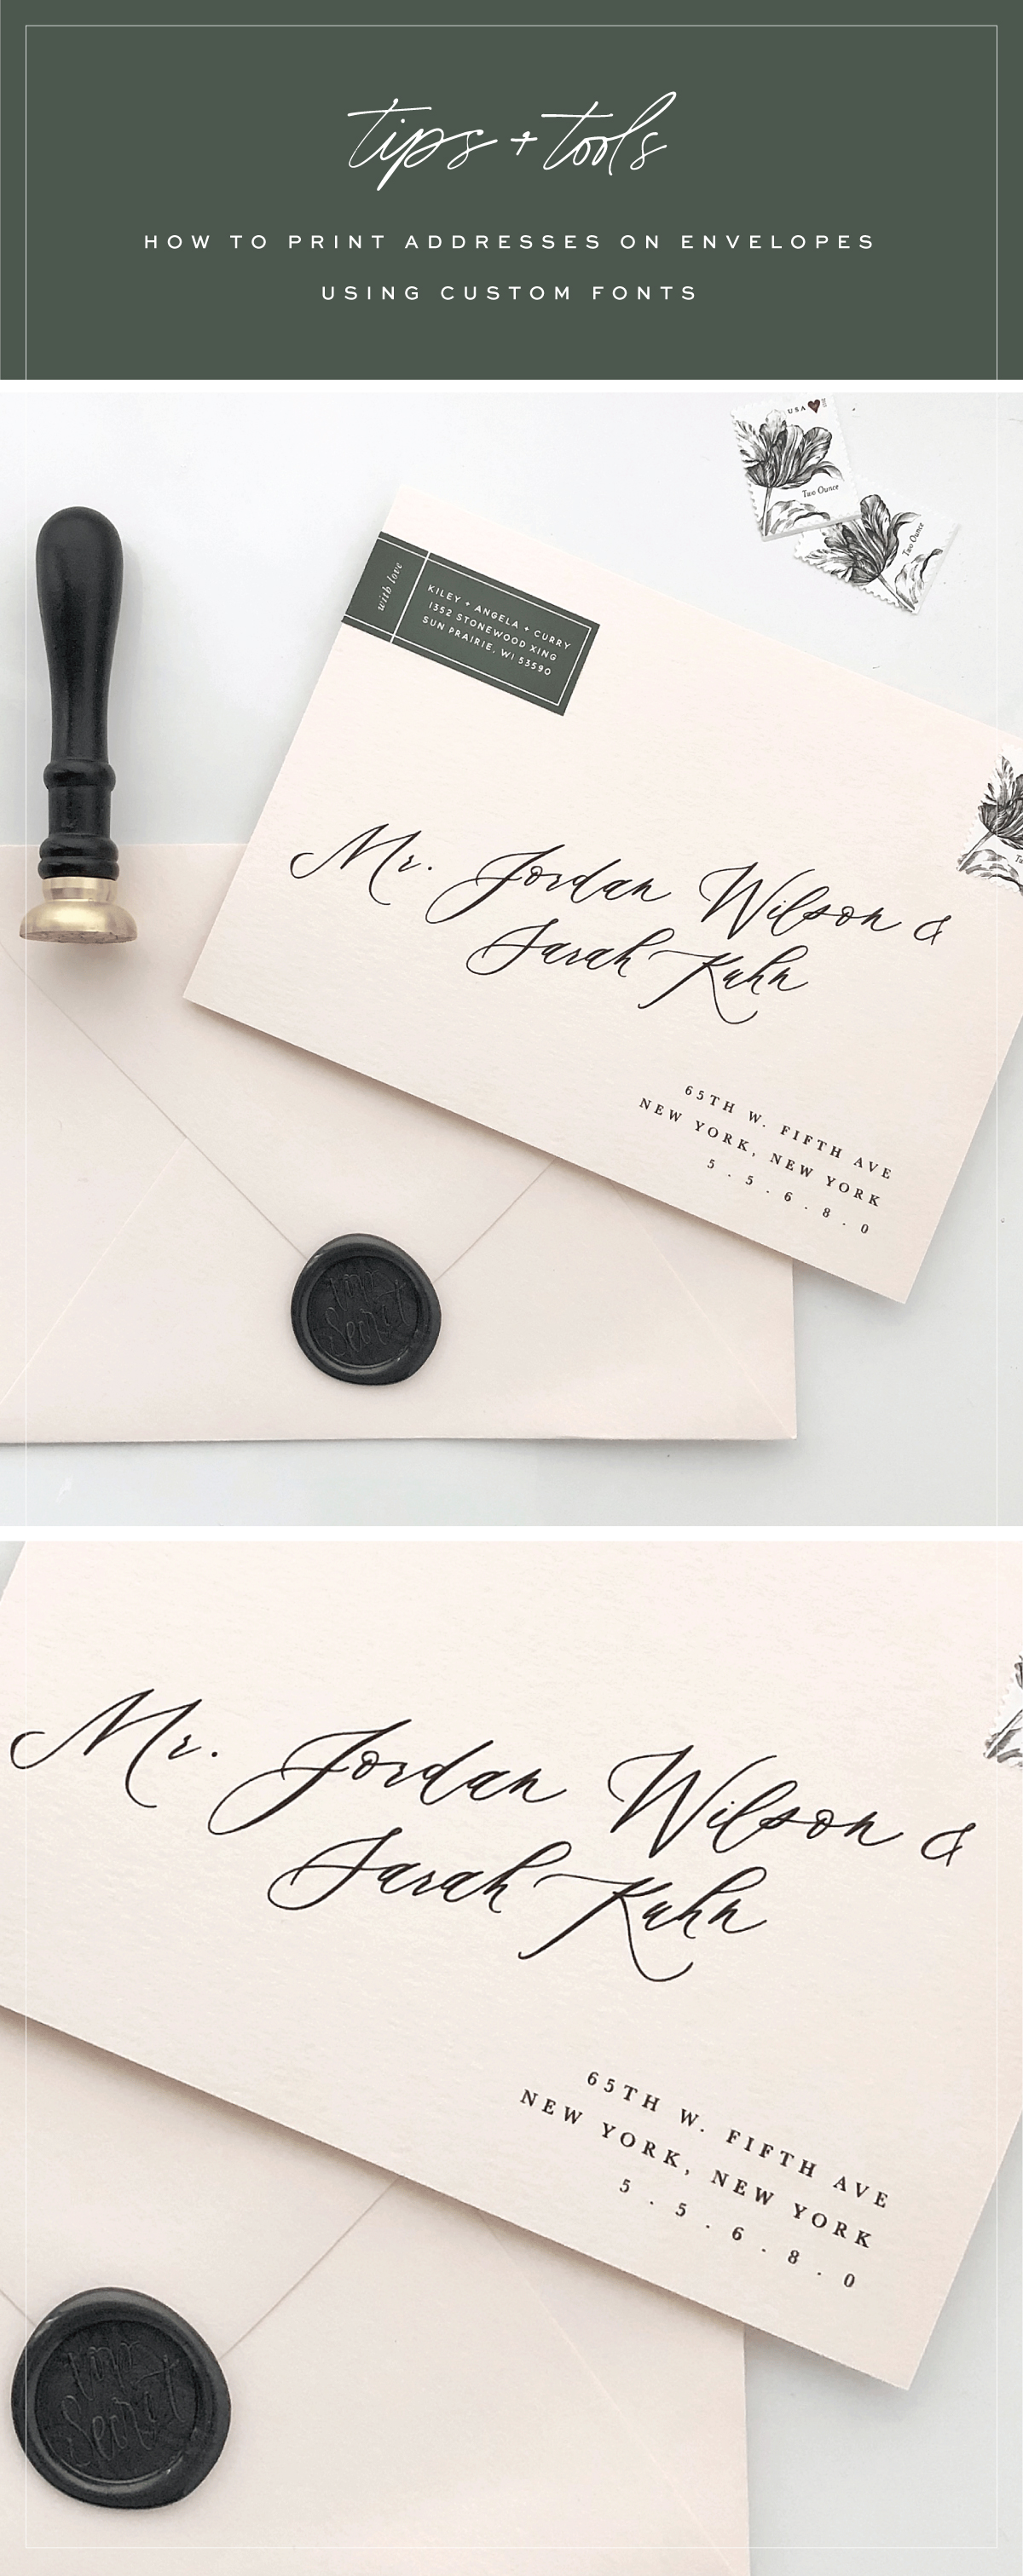 print addresses on envelopes using custom fonts